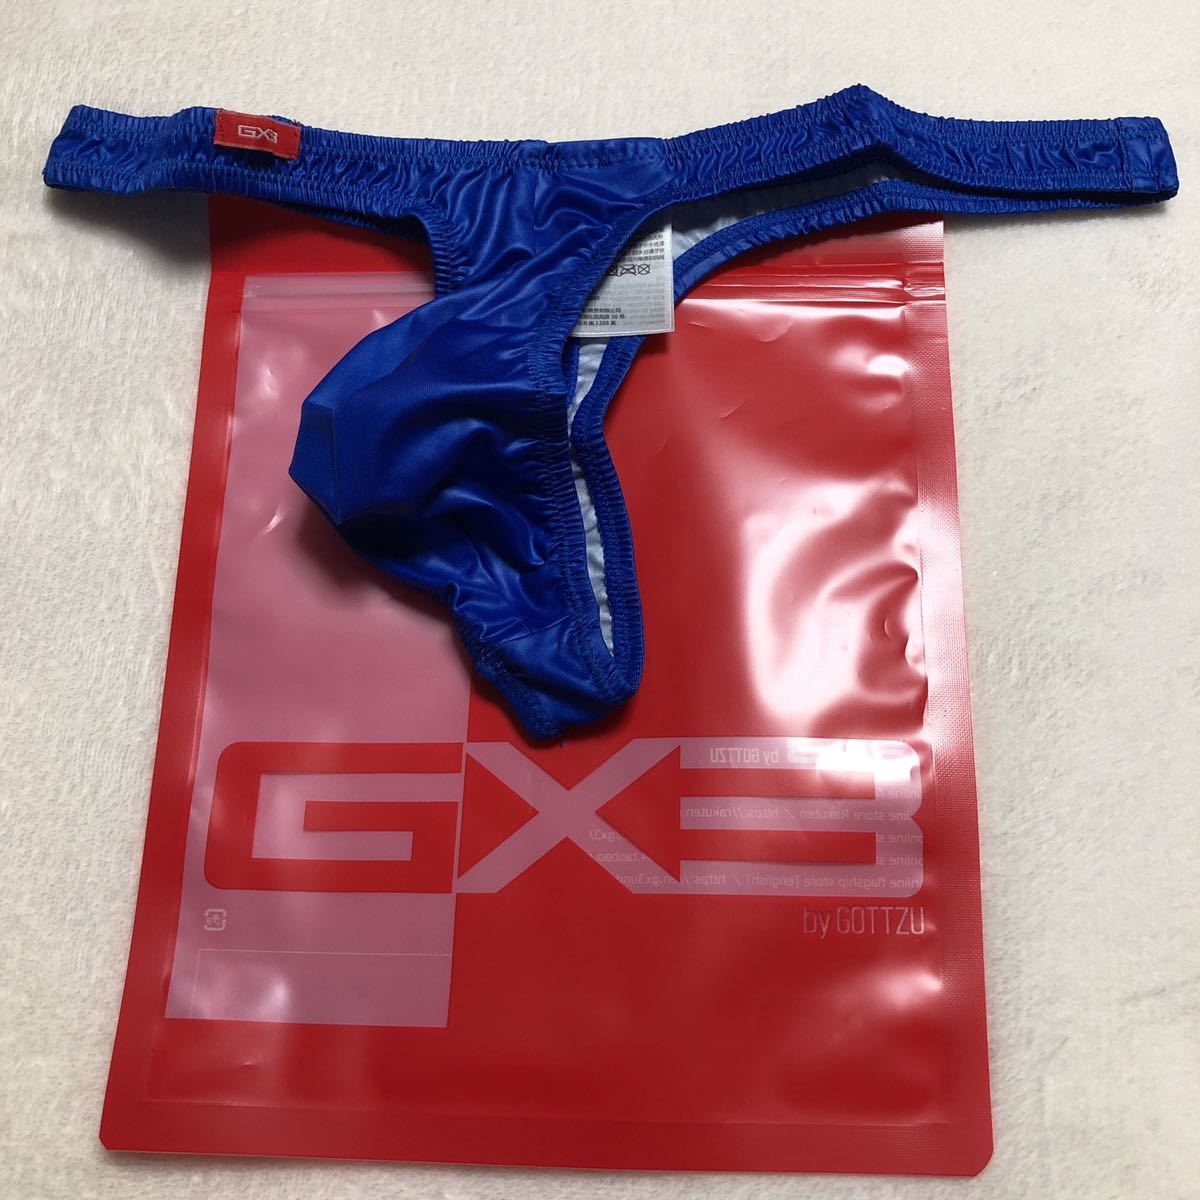 人気提案 GX3 SHEER バックオープン ビキニ general-bond.co.jp